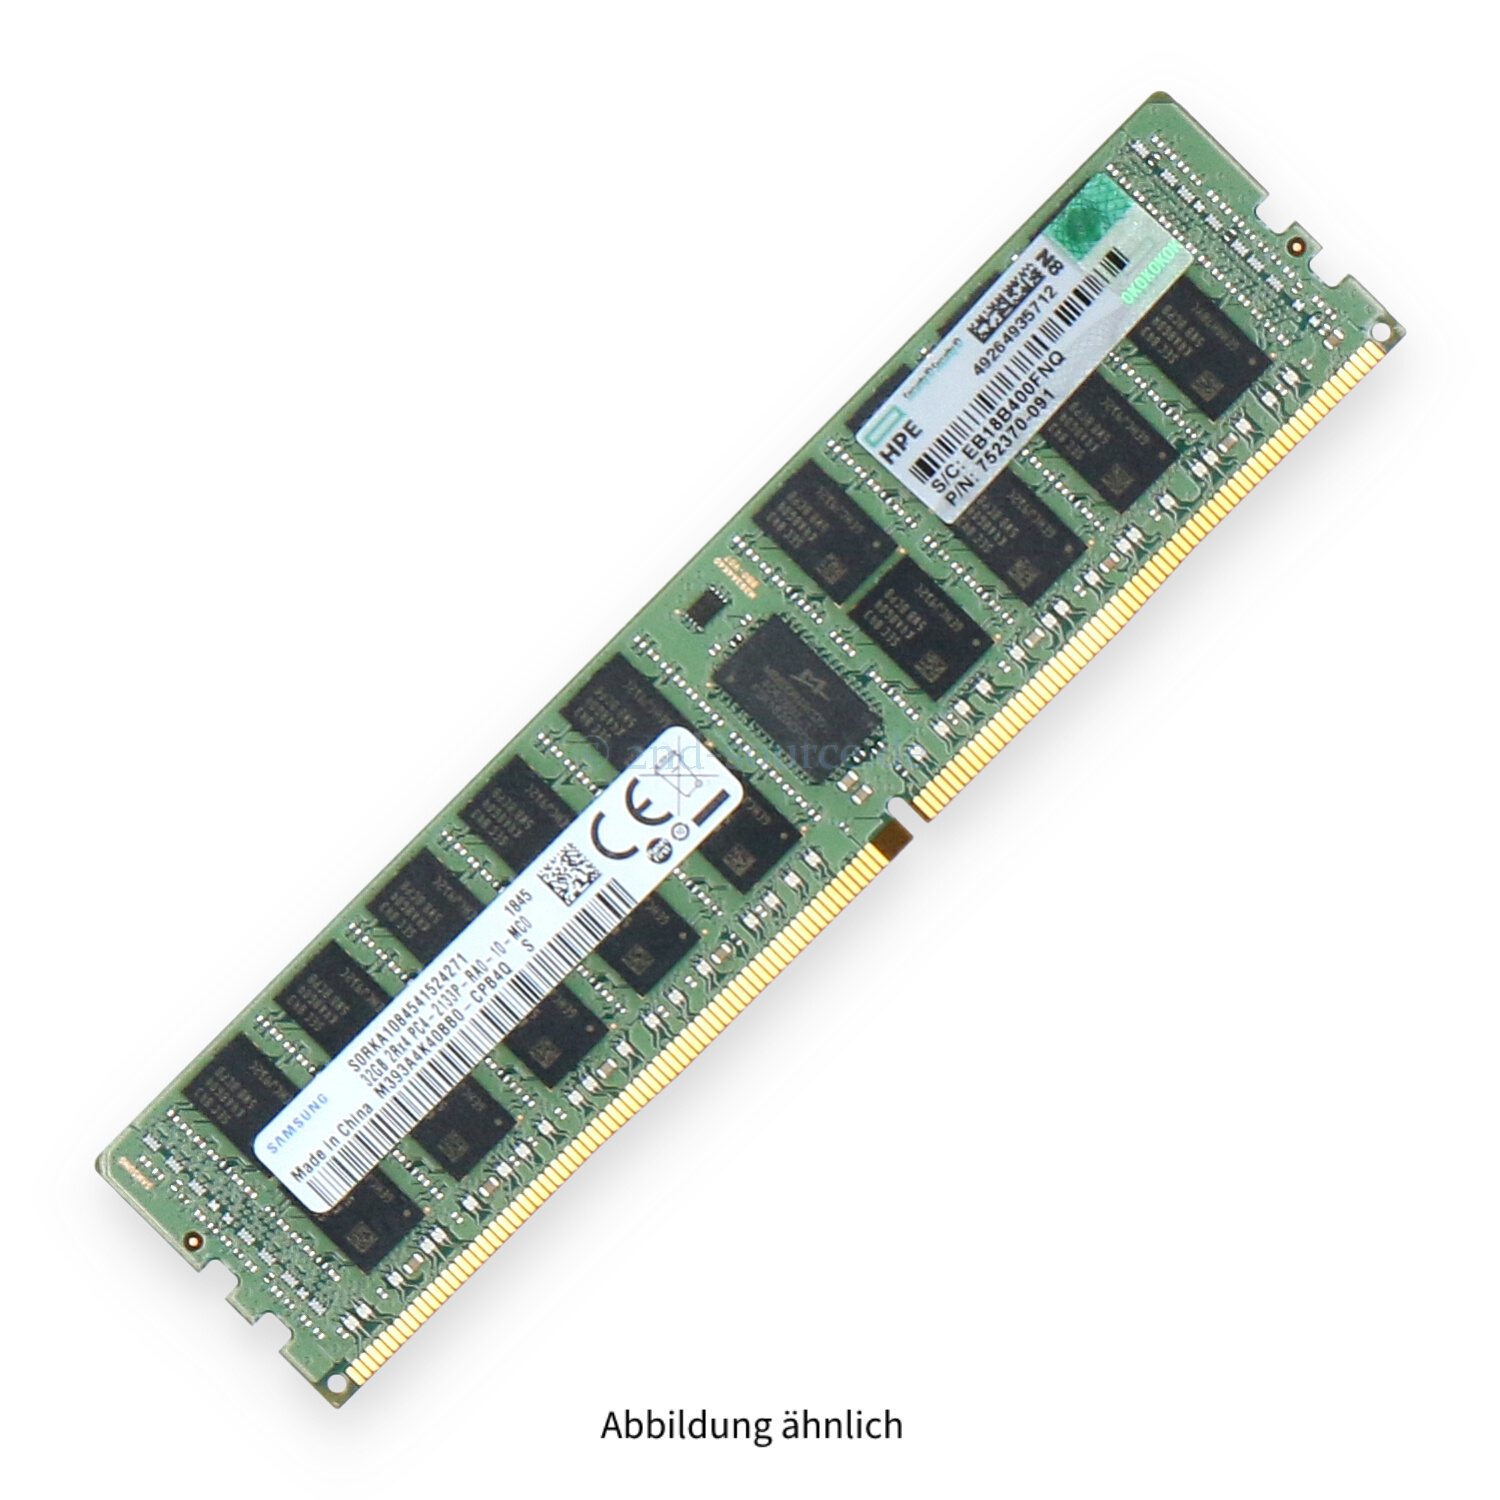 HPE 32GB PC4-17000P-R DIMM Dual Rank x4 (DDR4-2133) Registered ECC 728629-B21 774175-001 752370-091